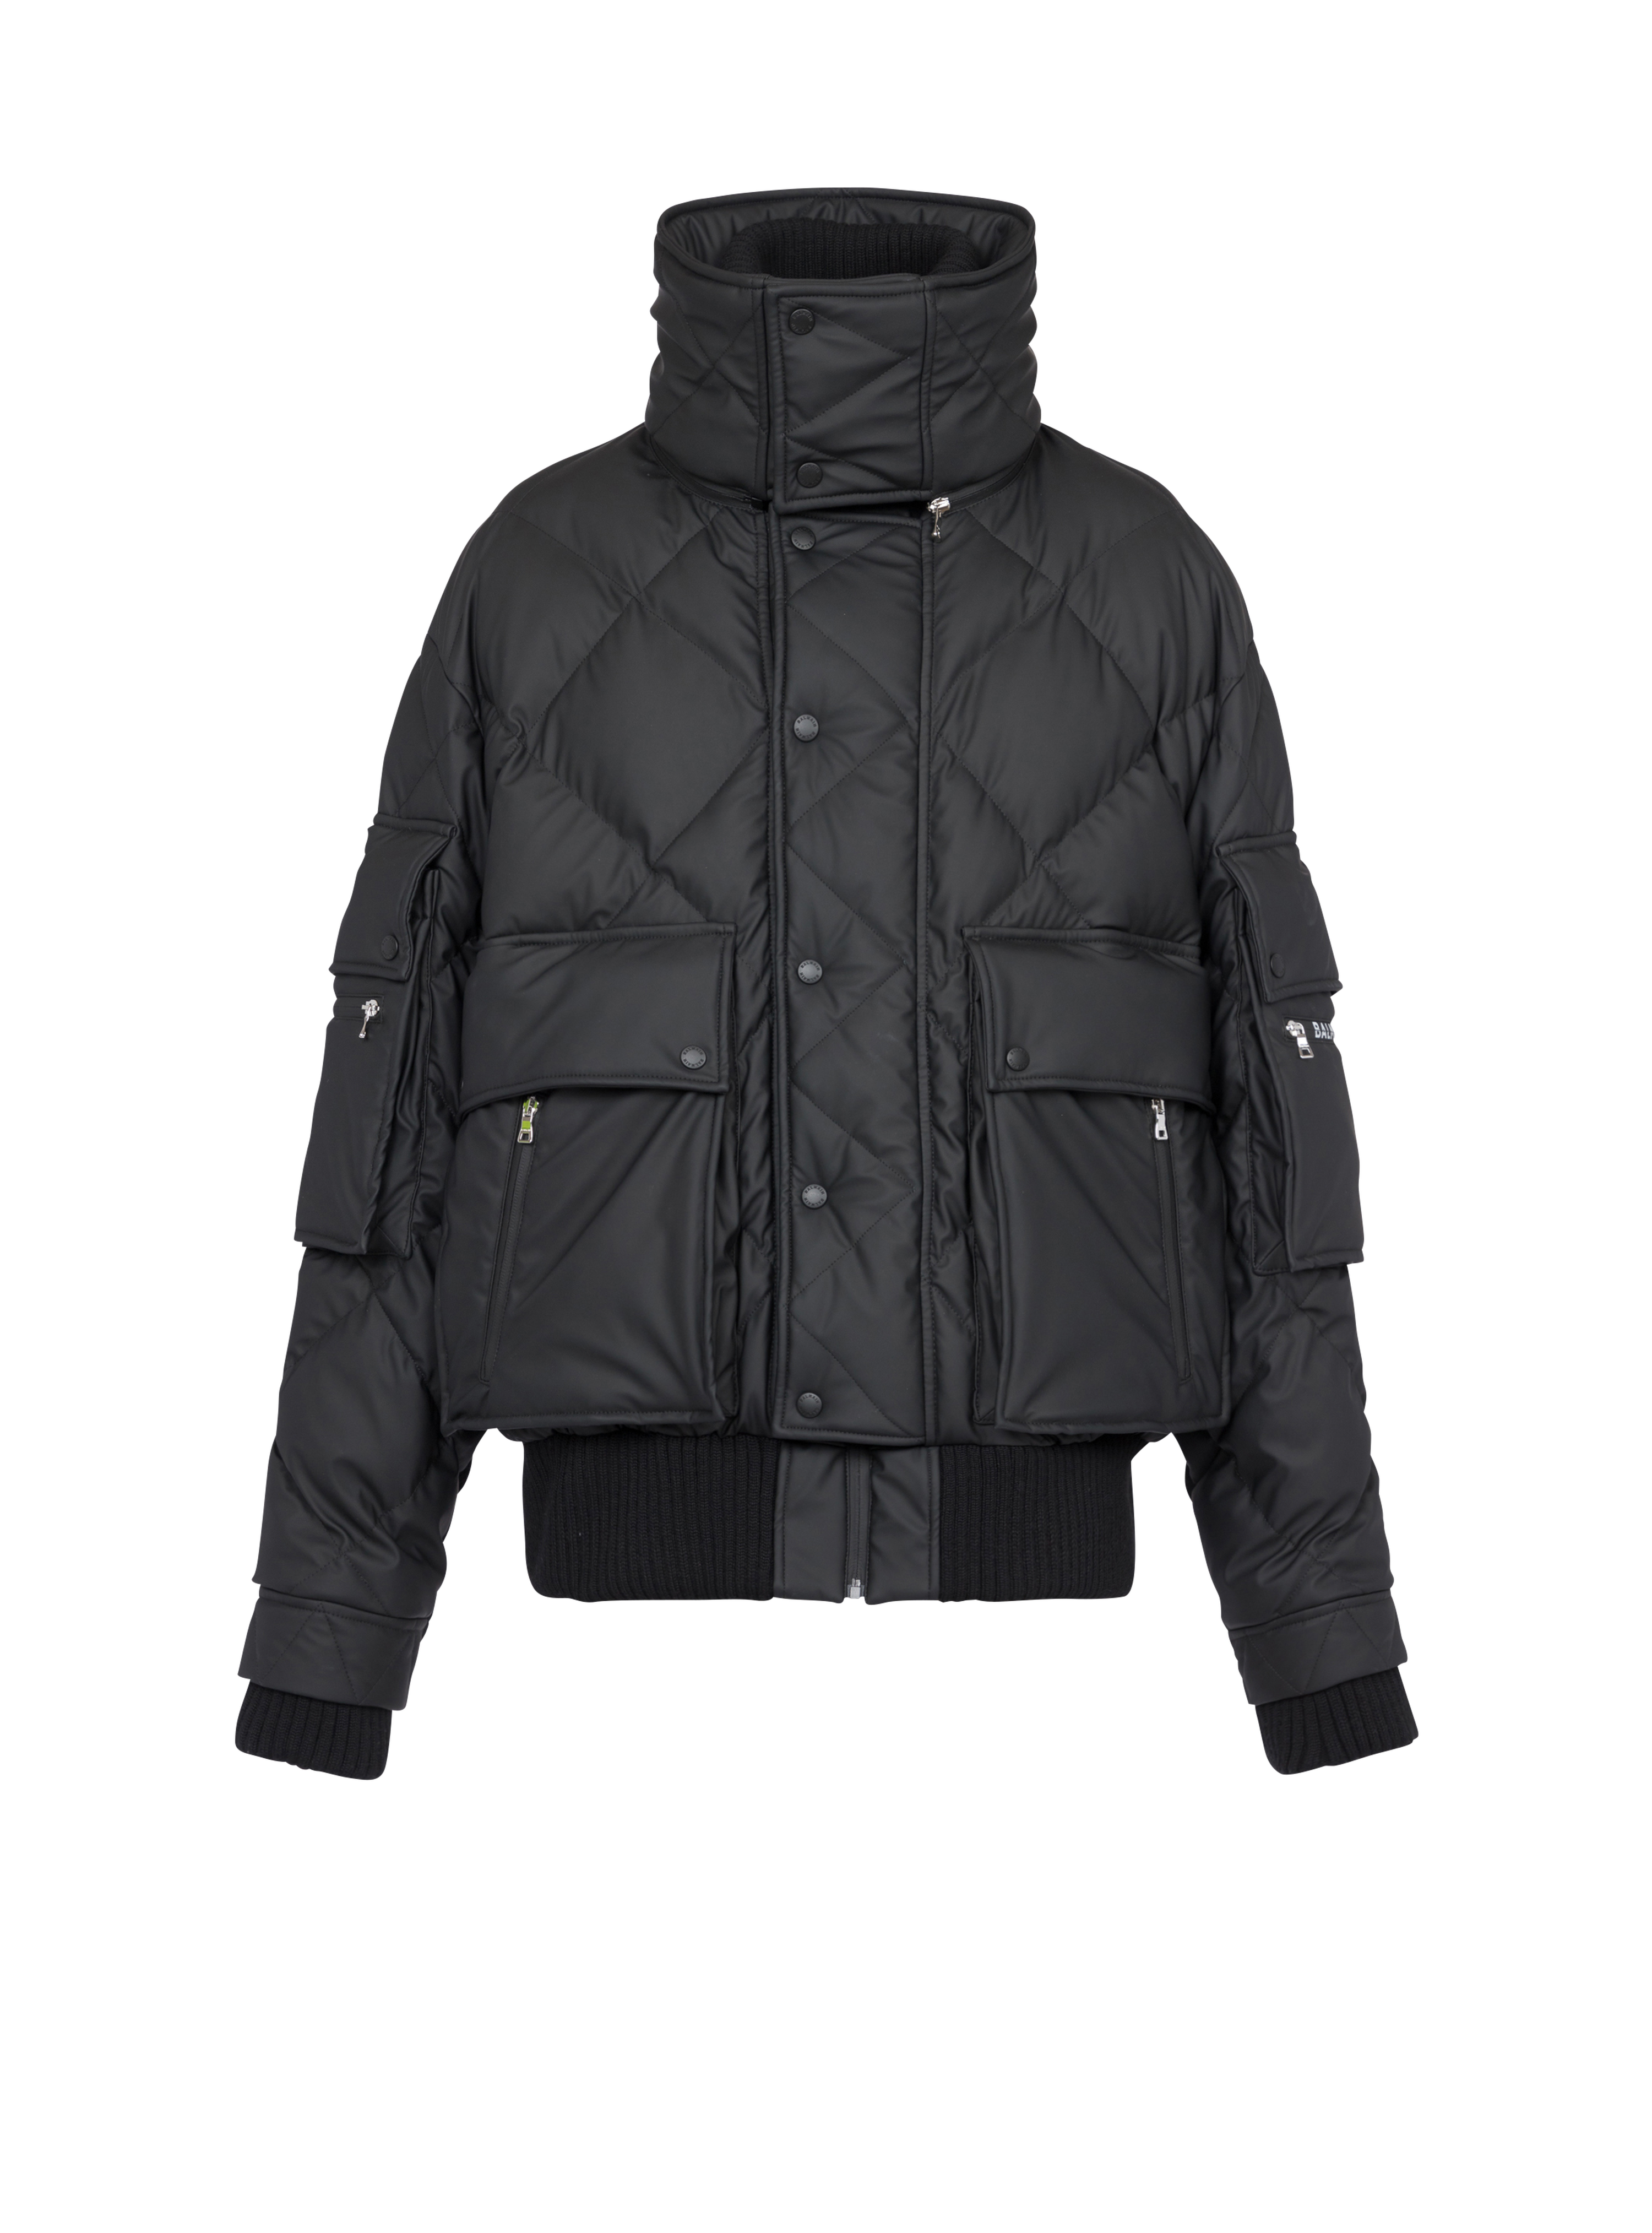 인조 가죽 퀼팅 후드 재킷, 검정색